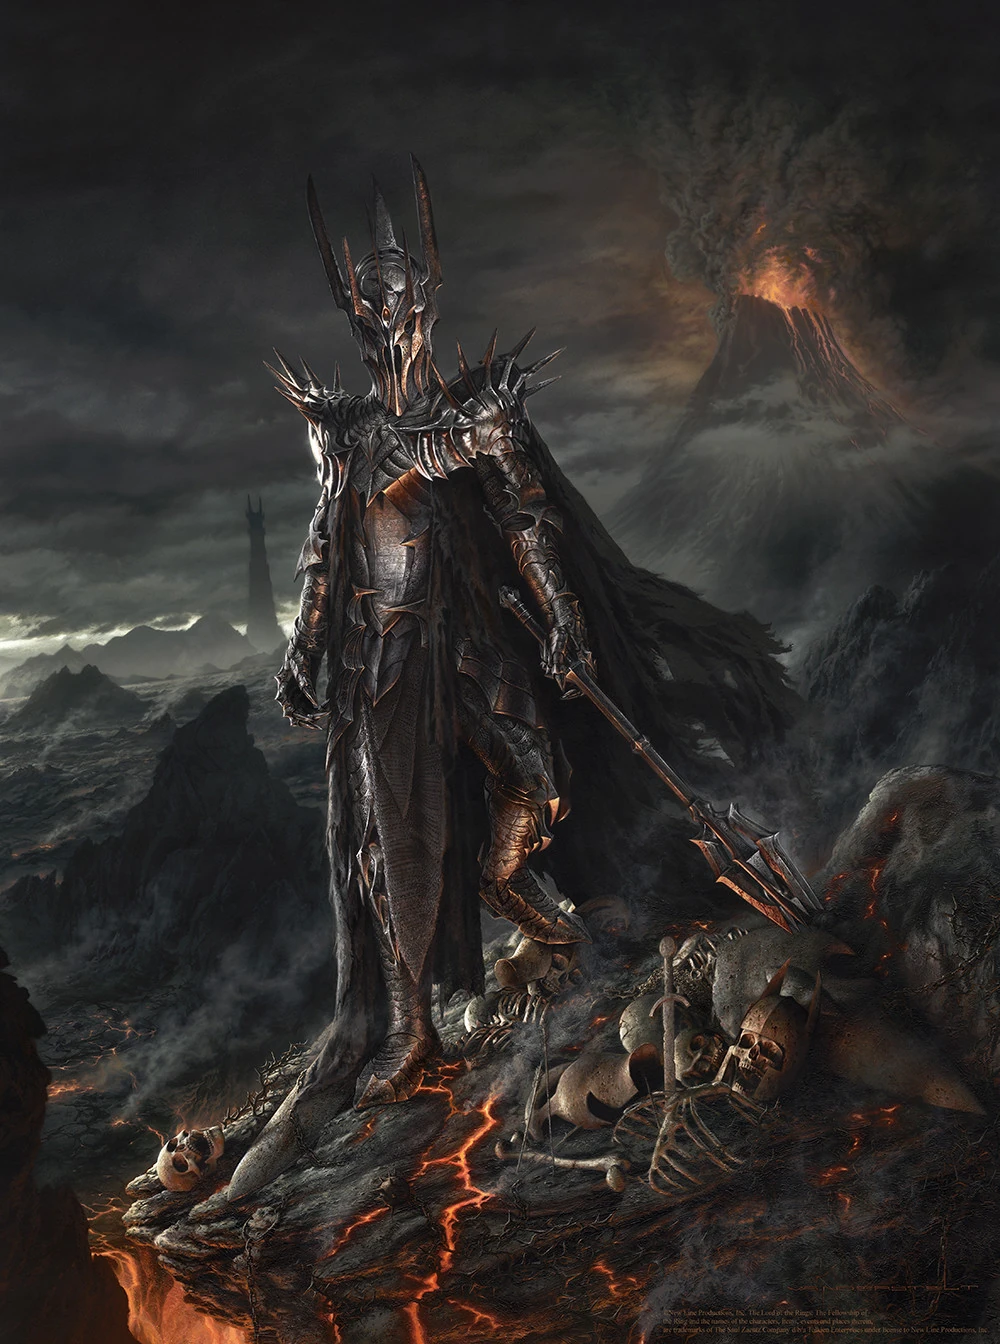 What makes Sauron so powerful